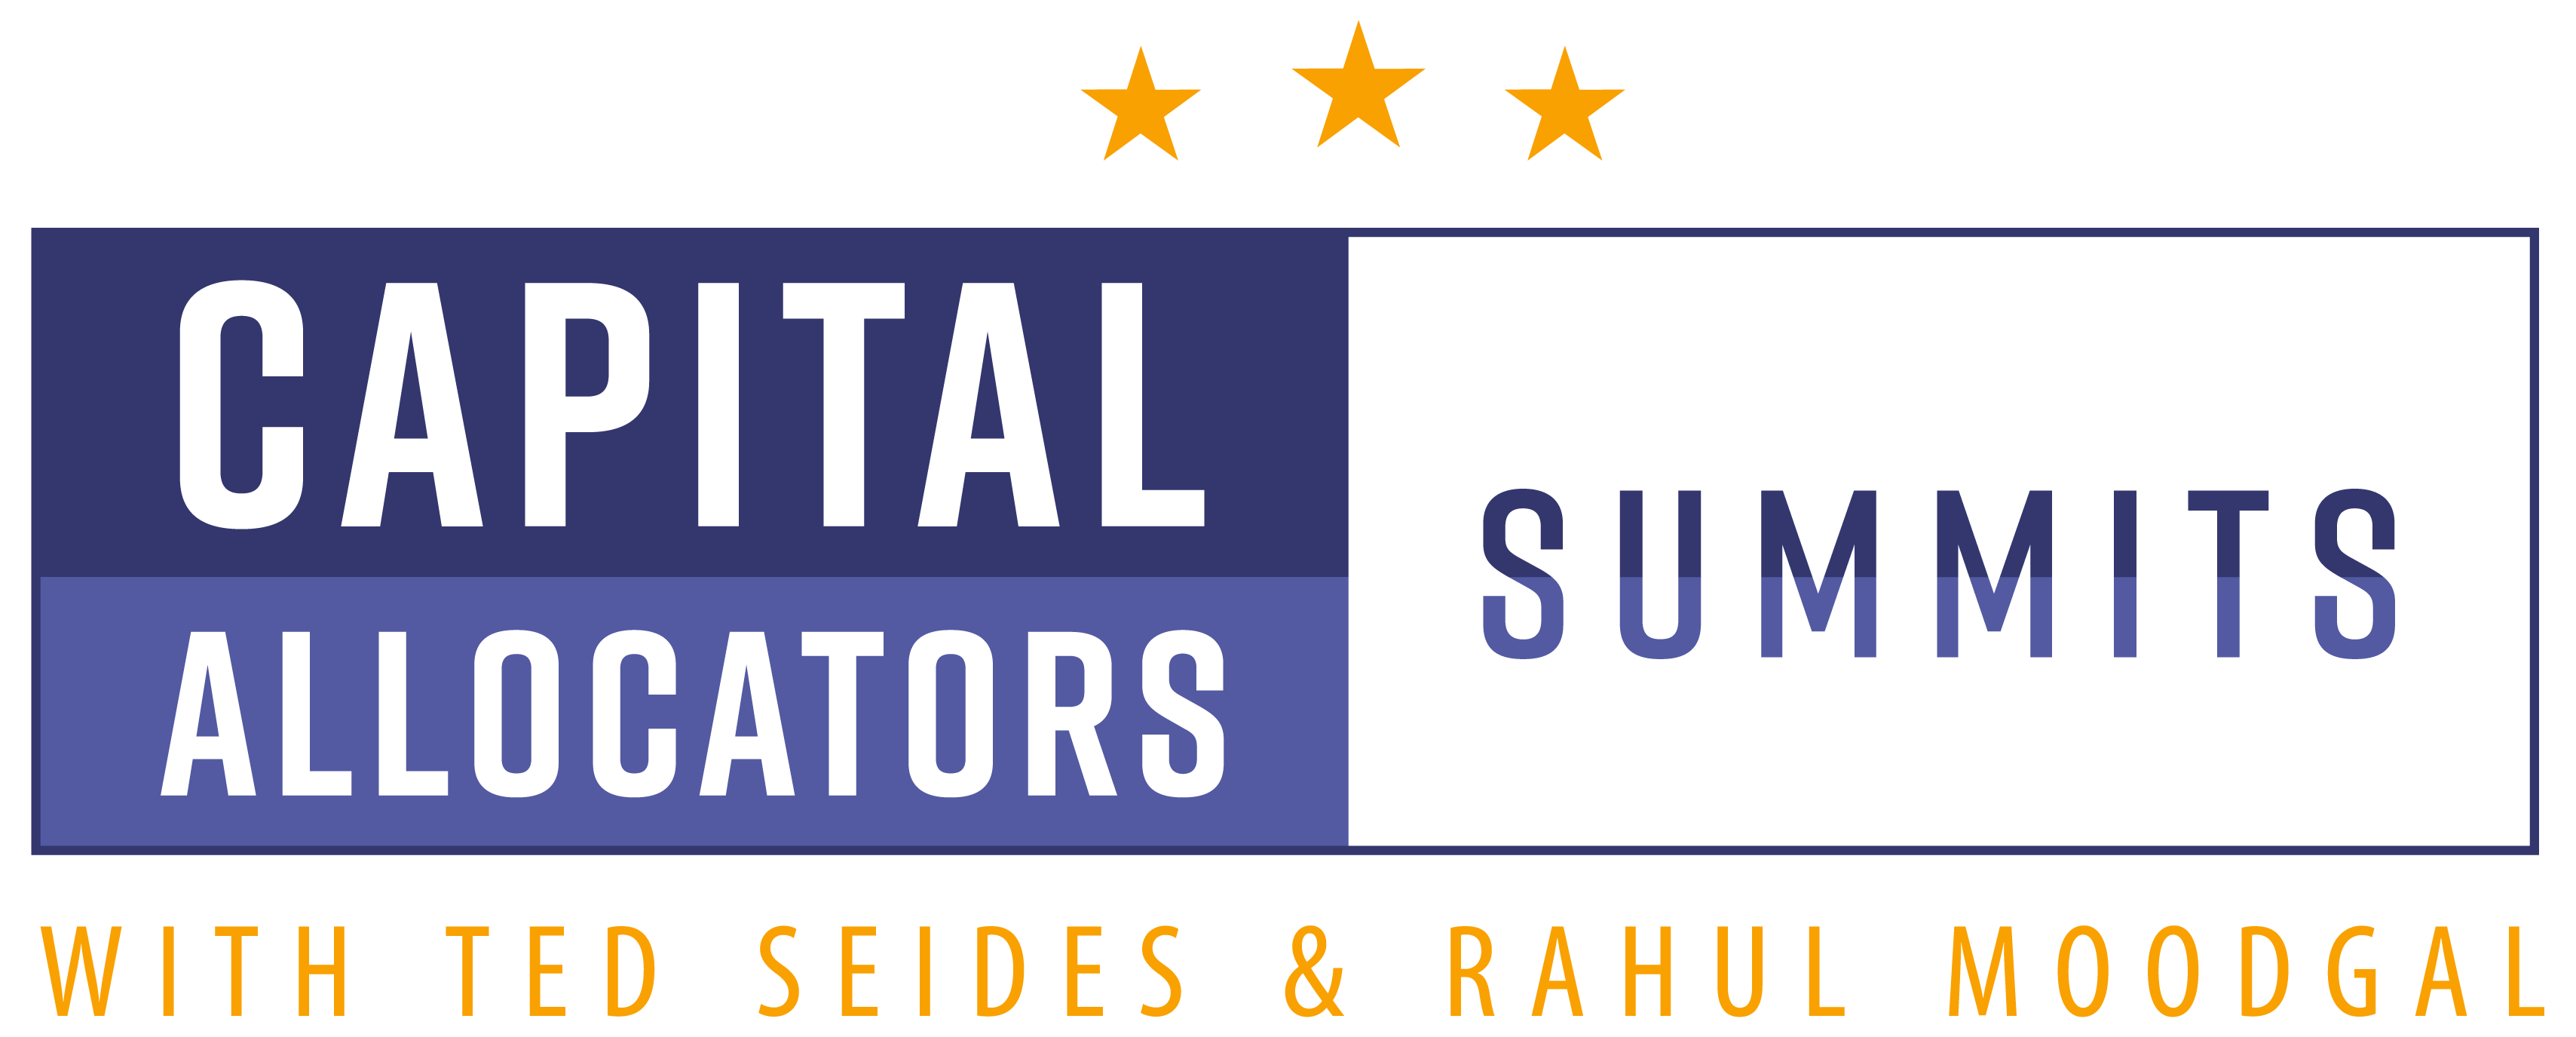 Capital Allocators Summits logo